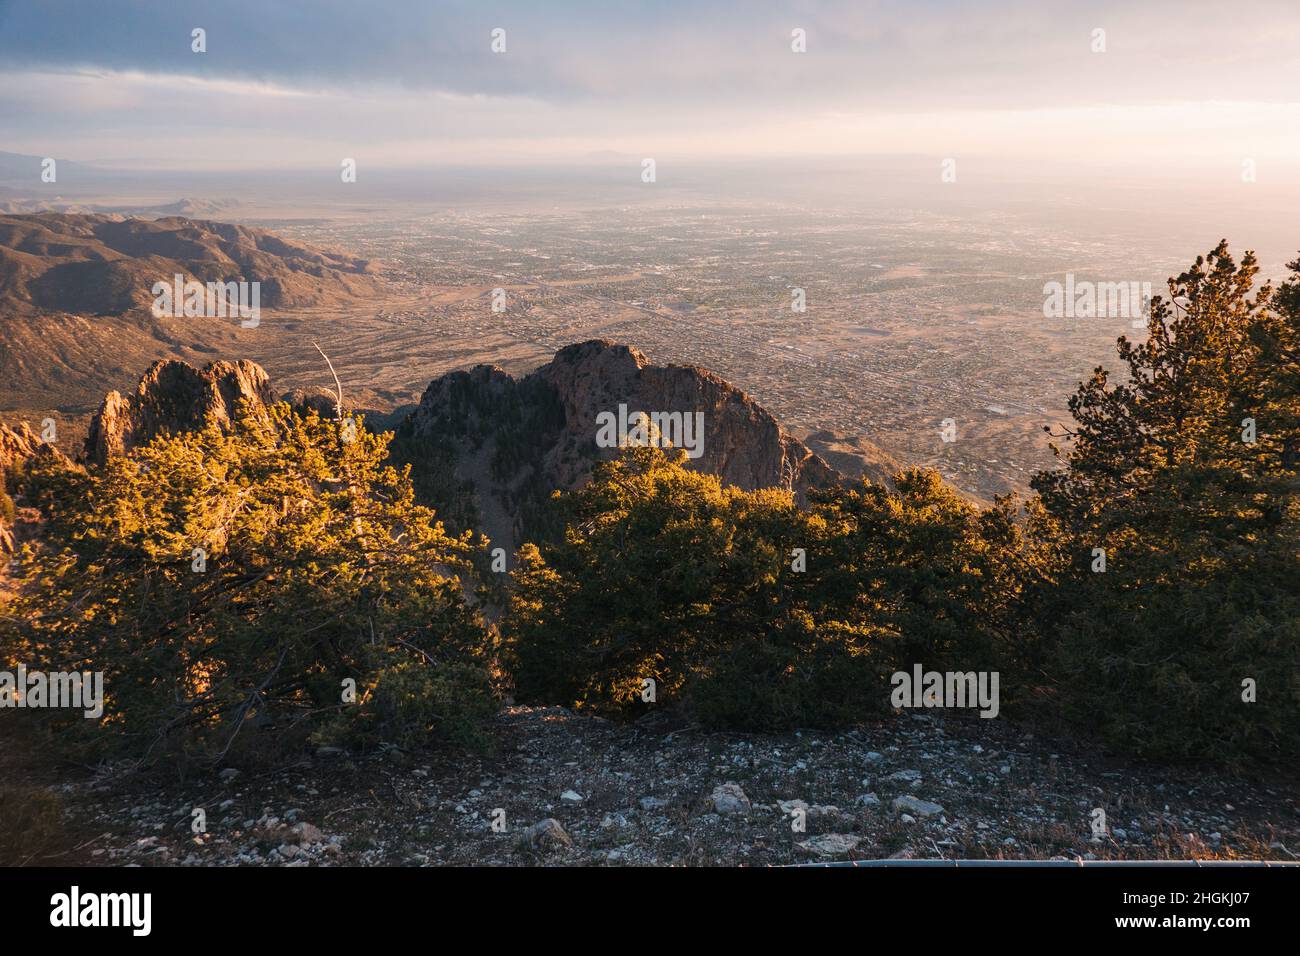 La ville d'Albuquerque, Nouveau-Mexique, vue depuis le sommet des montagnes Sandia au coucher du soleil Banque D'Images